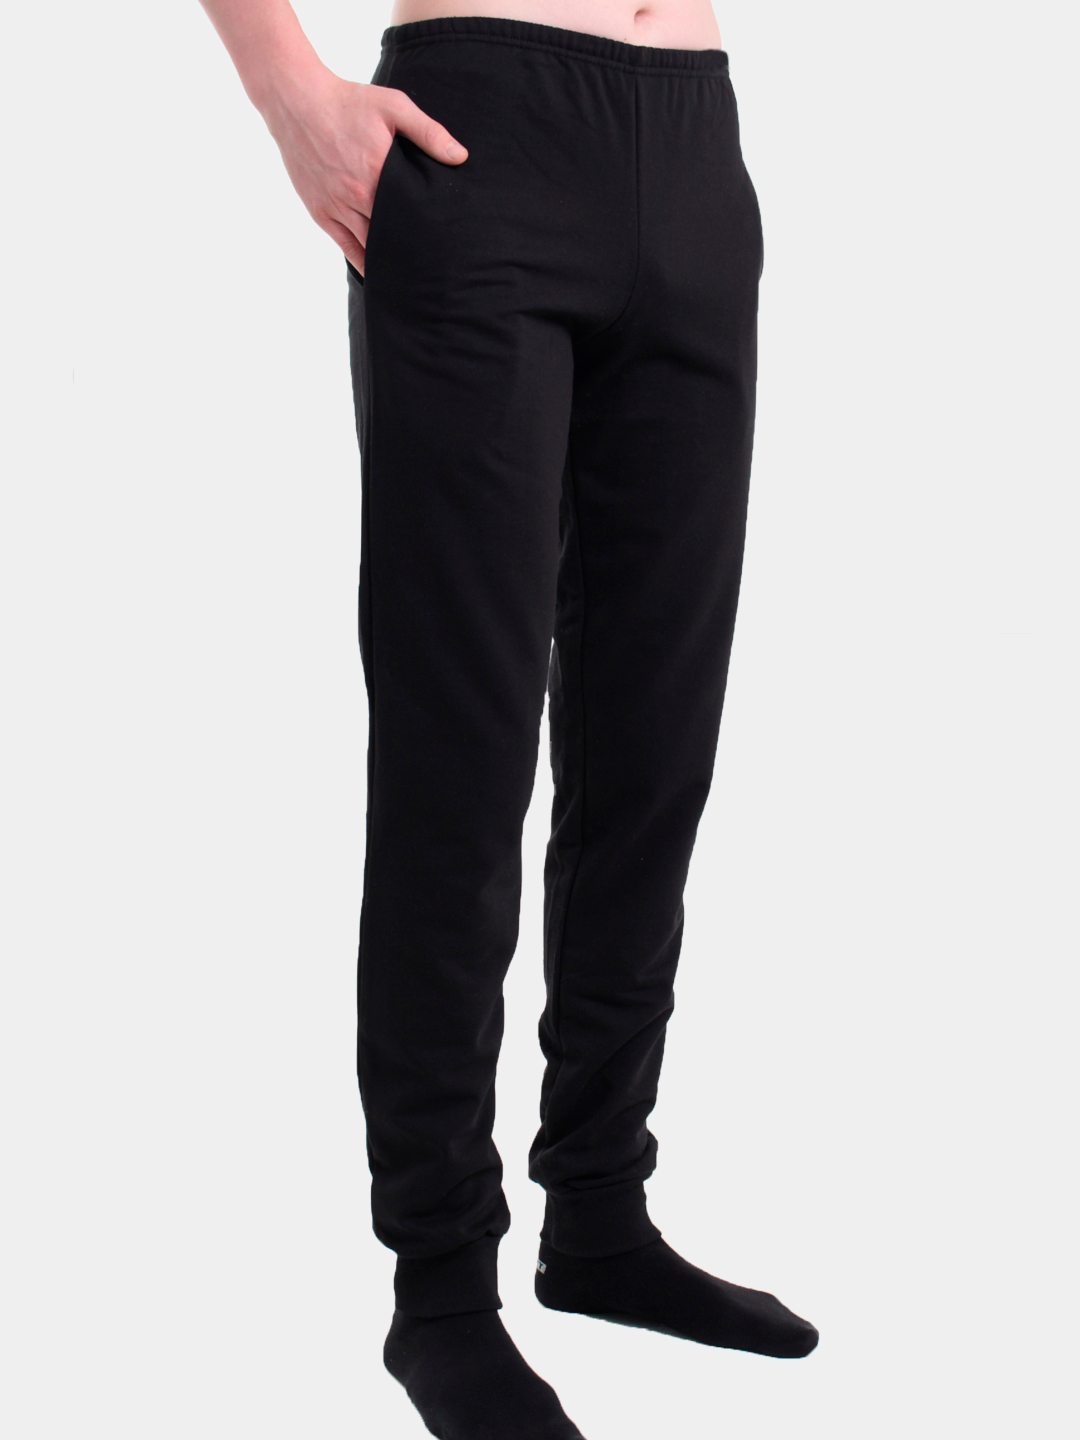 Мужские трикотажные брюки, утепленные спортивные штаны купить по цене 980 ₽в интернет-магазине KazanExpress